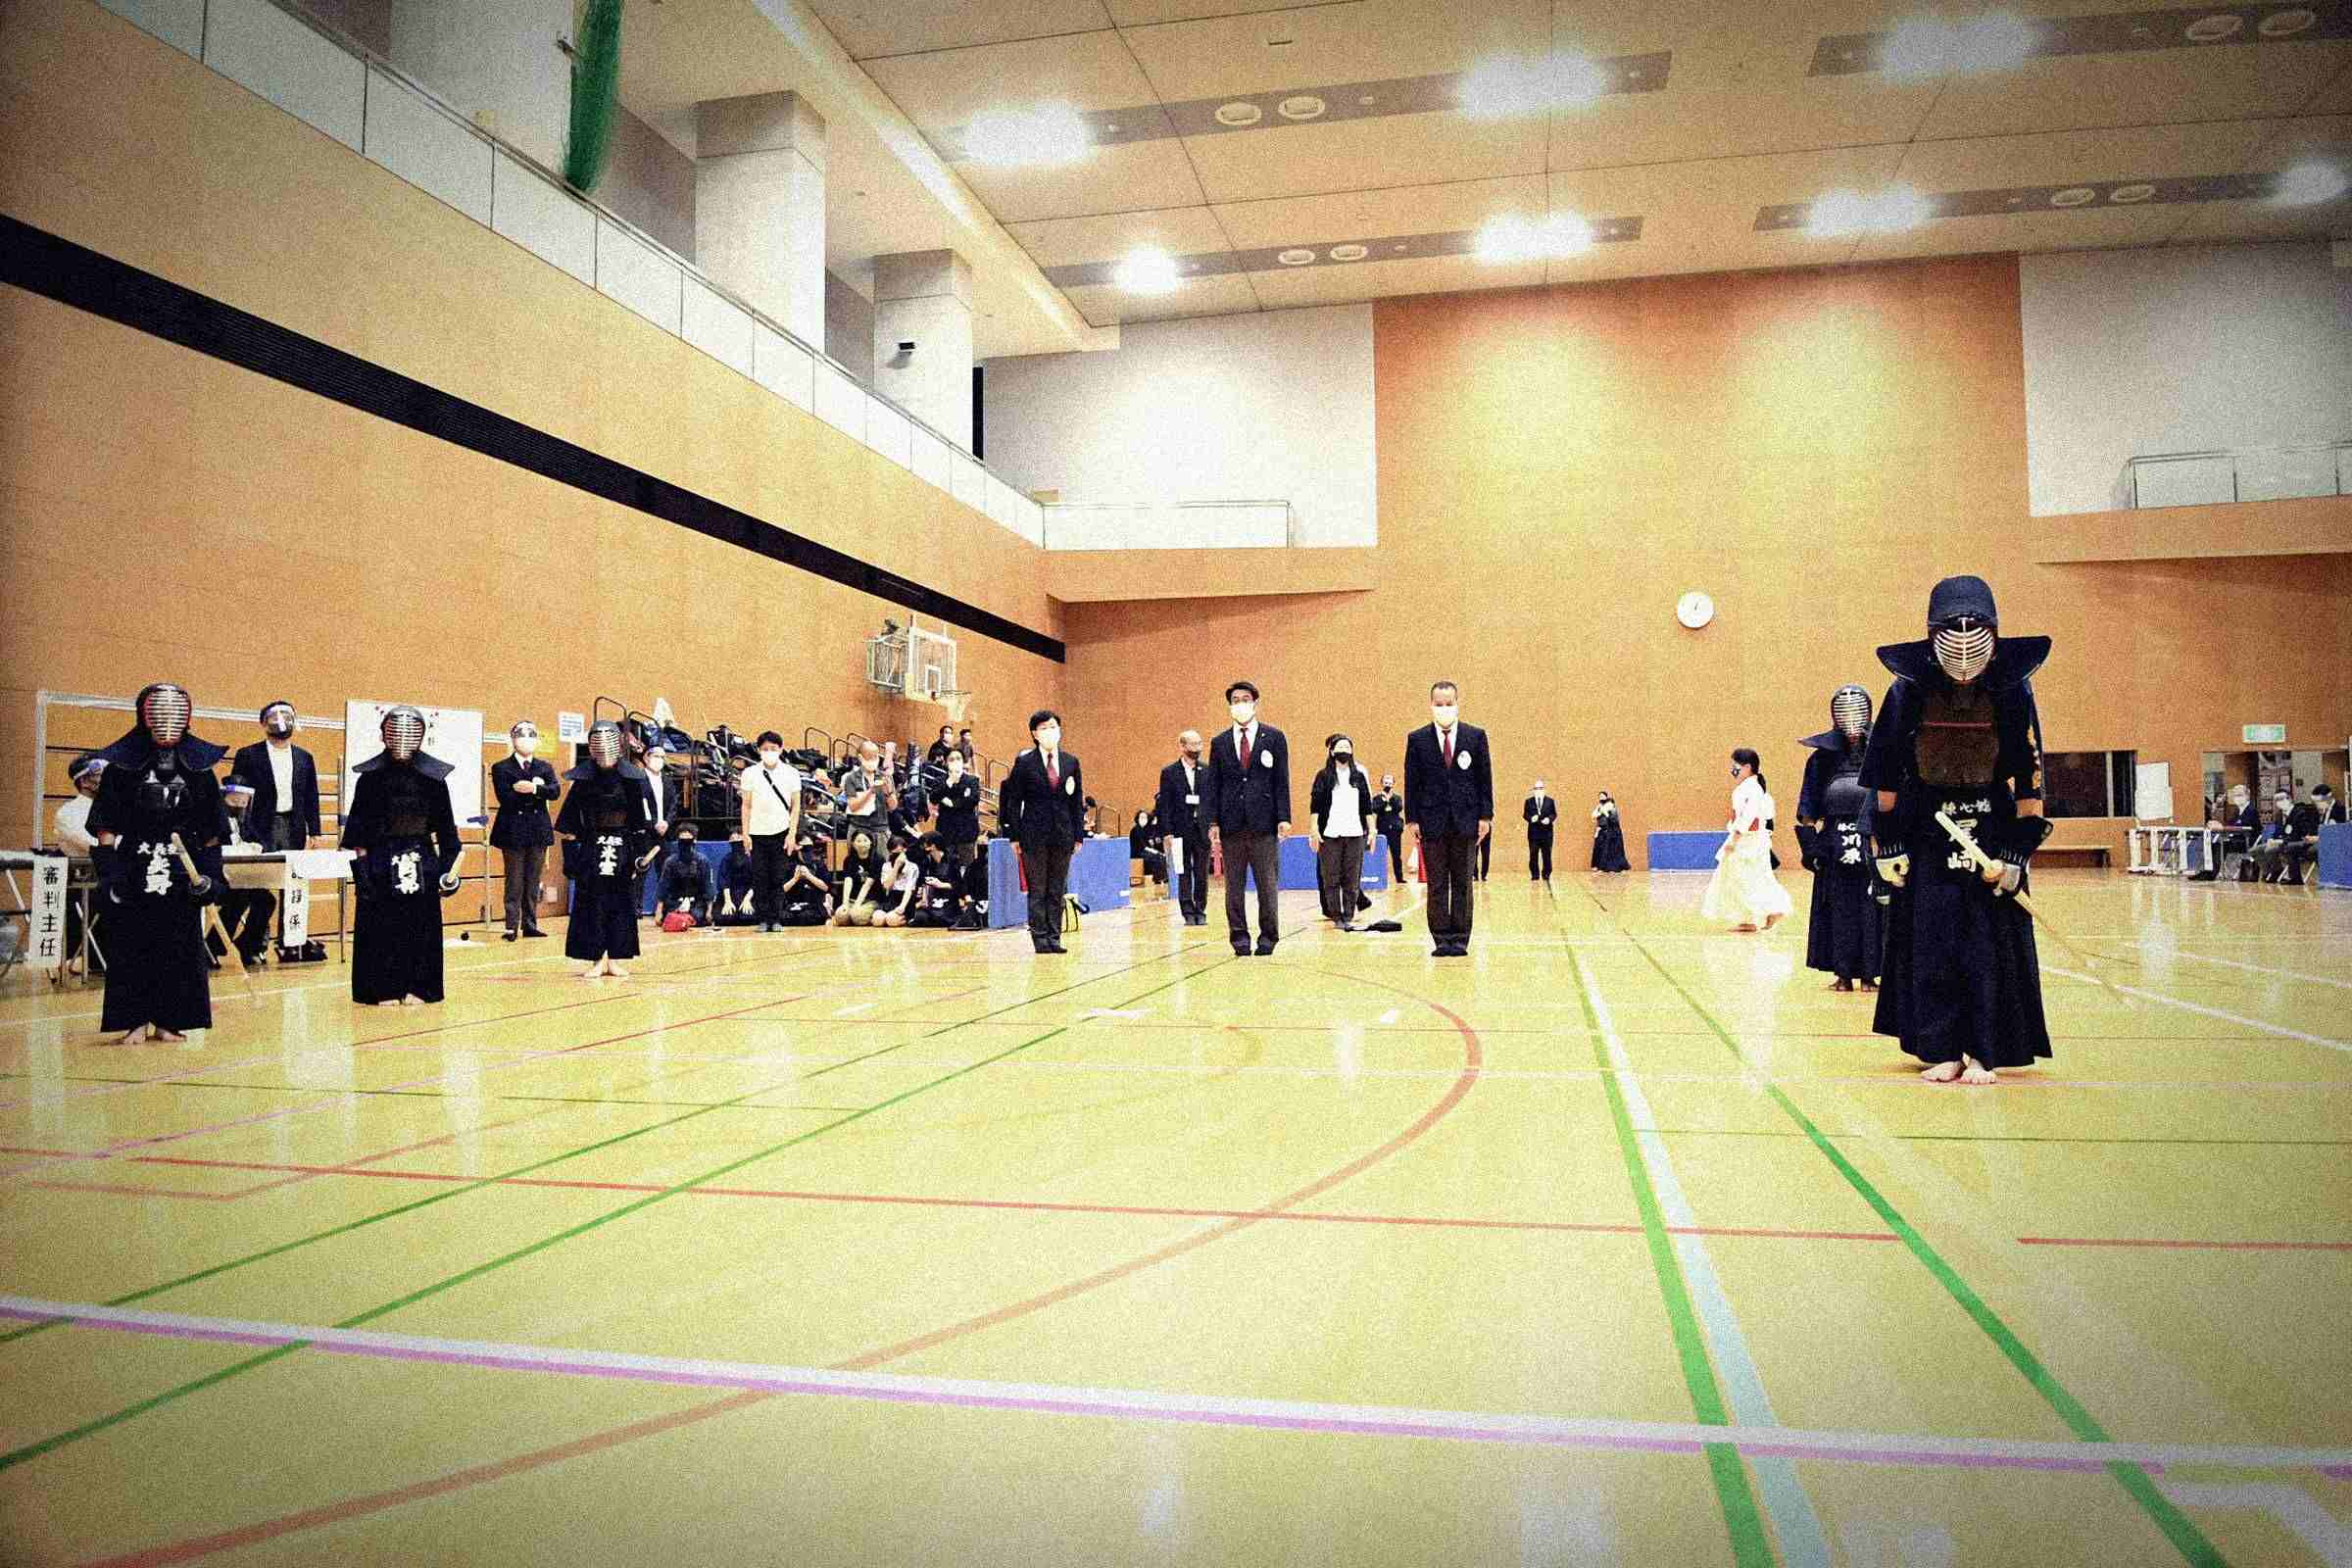 剣道の同好の士が団結し活動を続けています。